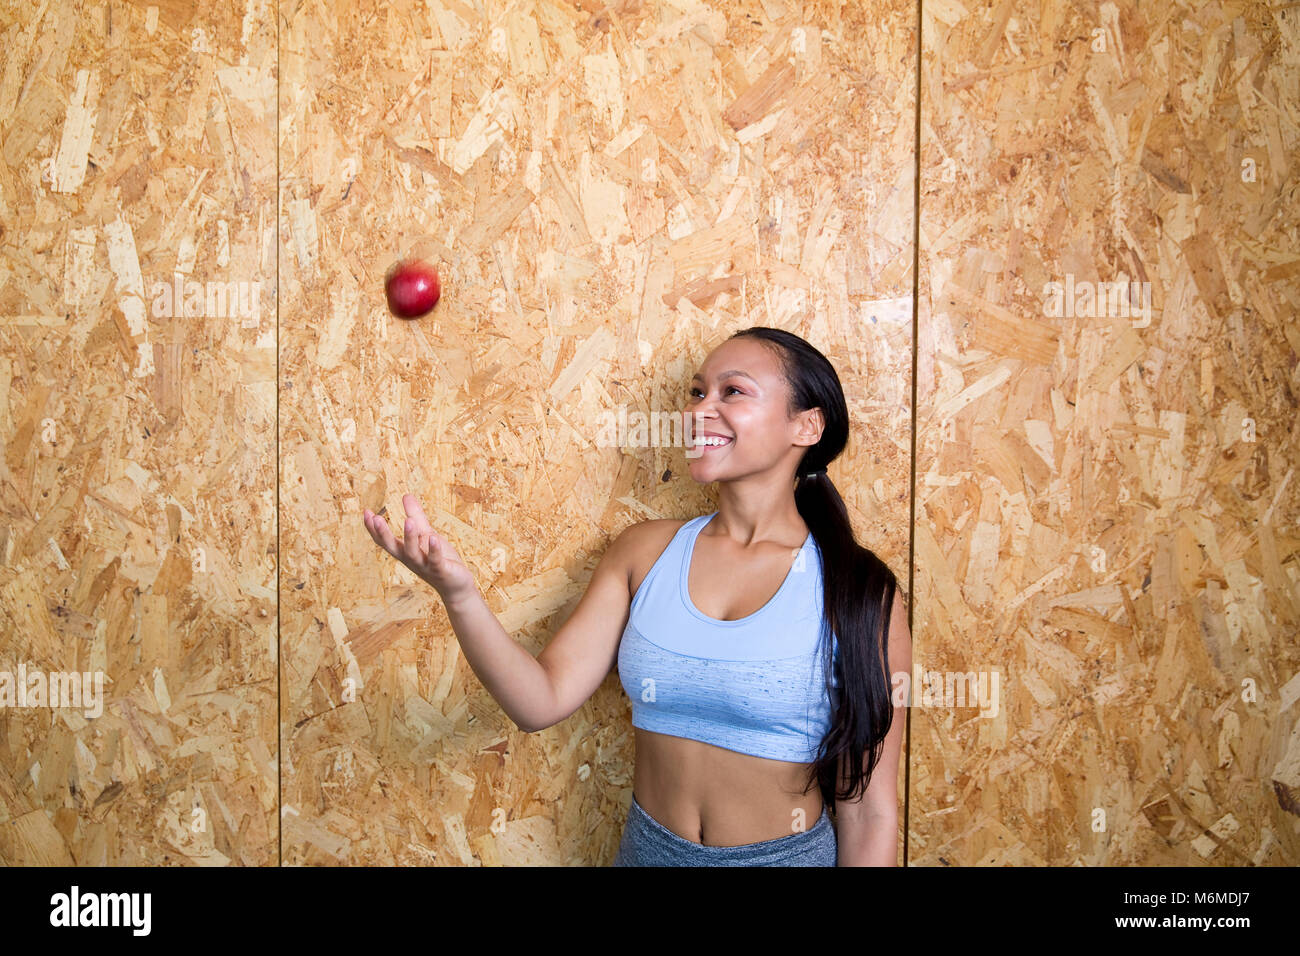 Razza mista donna gettando un Apple in aria Foto Stock